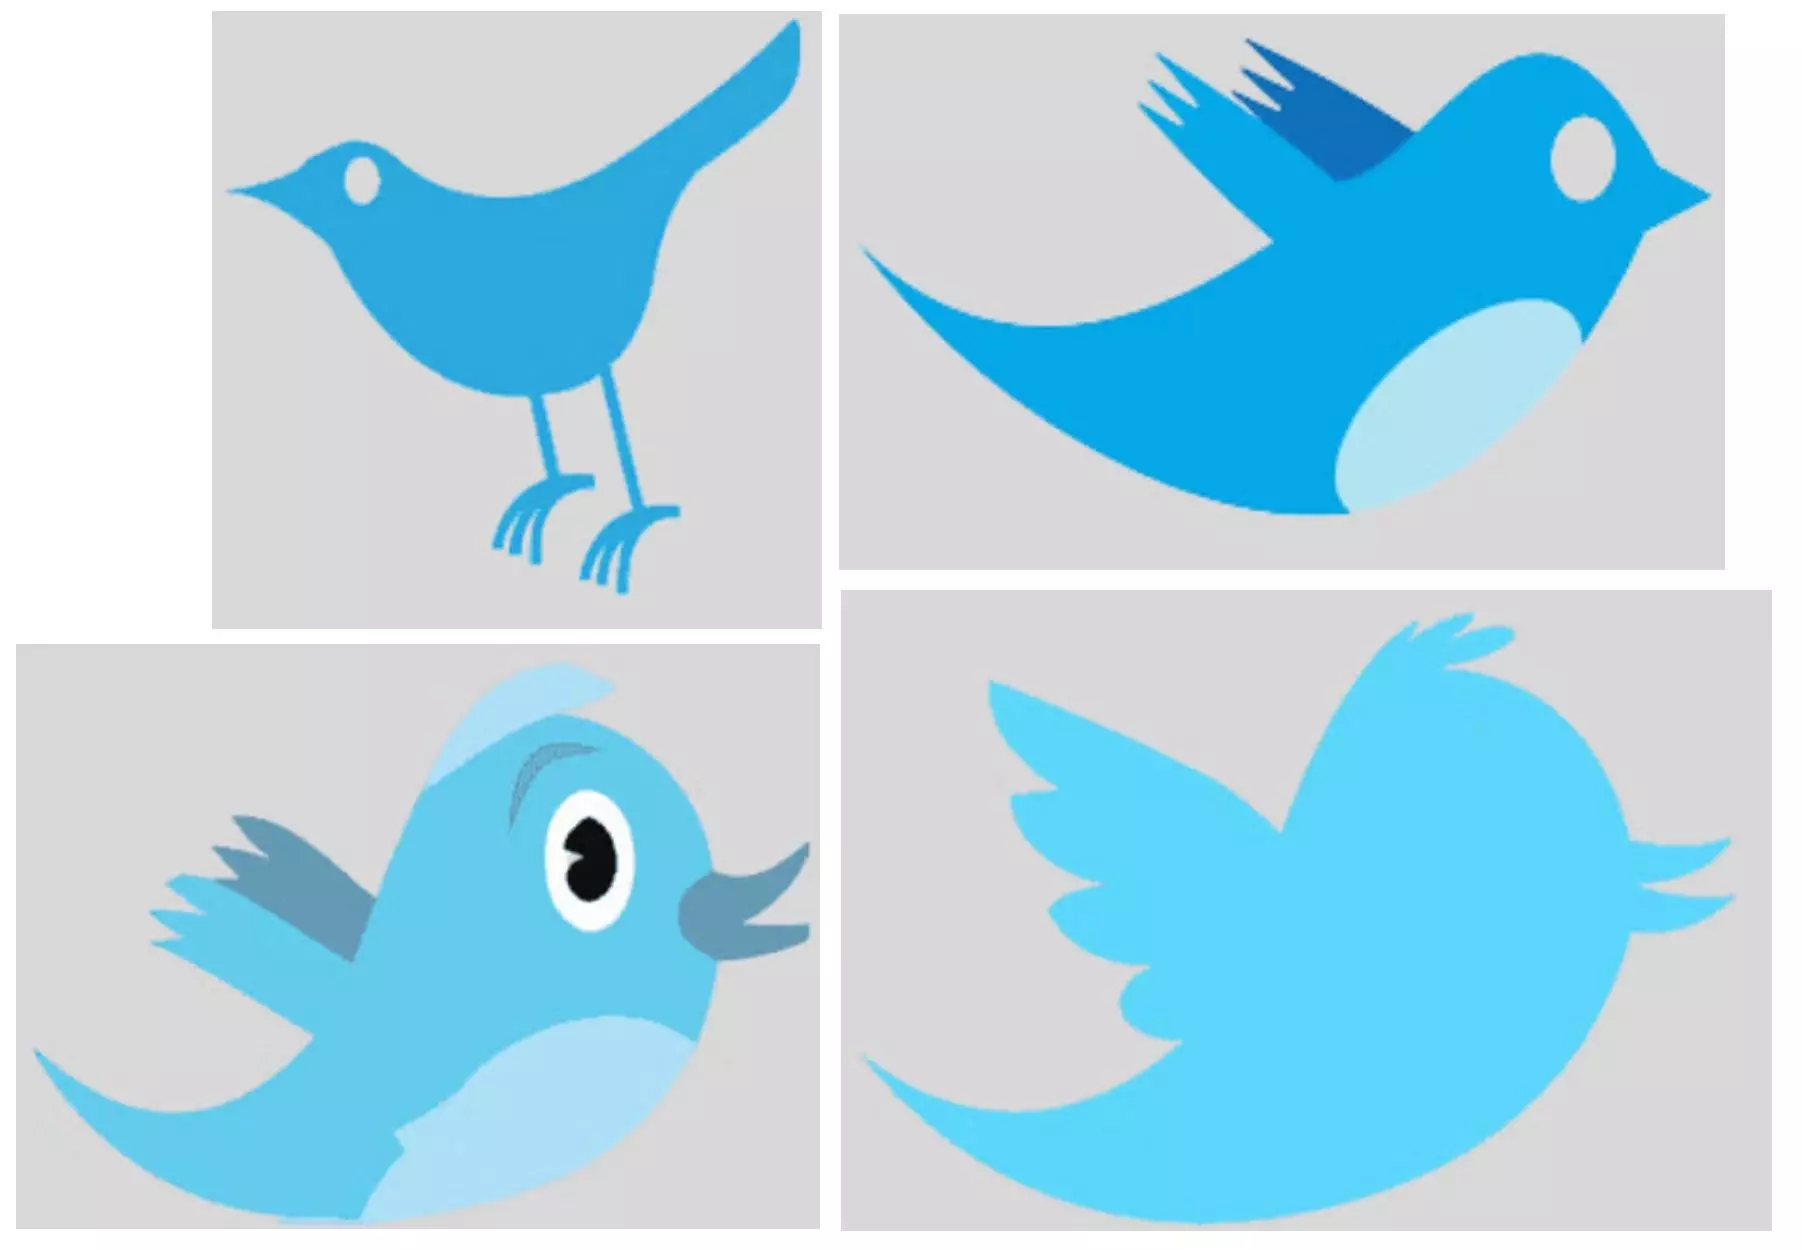 Diversas formas do pássaro azul foram usadas ao longo dos anos pelo Twitter como logomarca